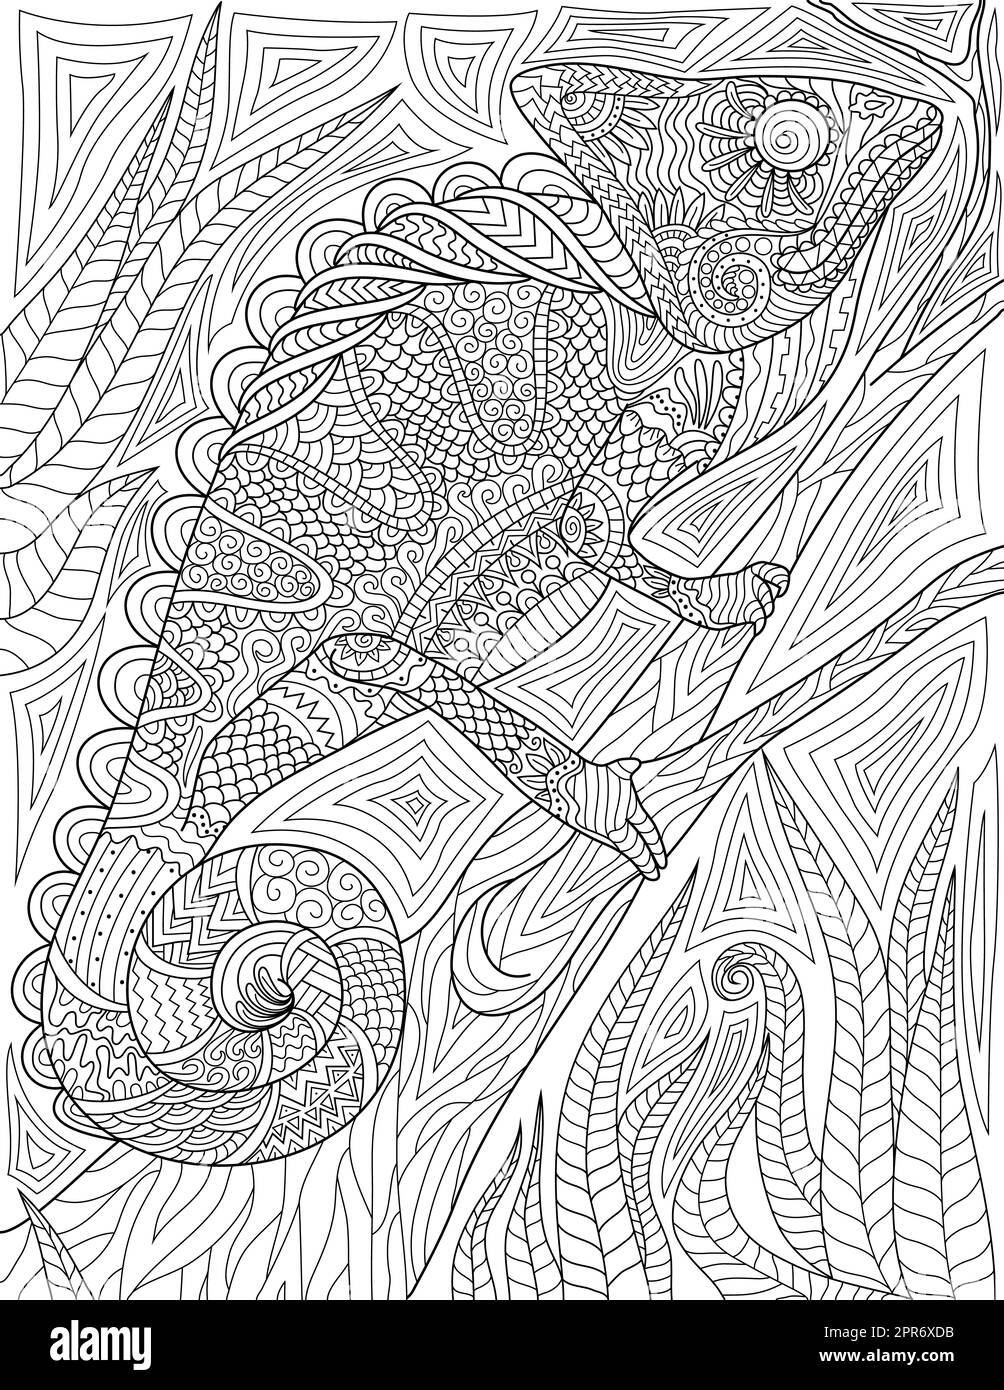 Colorare la pagina del libro con Iguana arrampicata su albero con sfondo dettagliato. Foglio da colorare con lucertola che scorre su legno. Chameleon salendo su Timber. Foto Stock